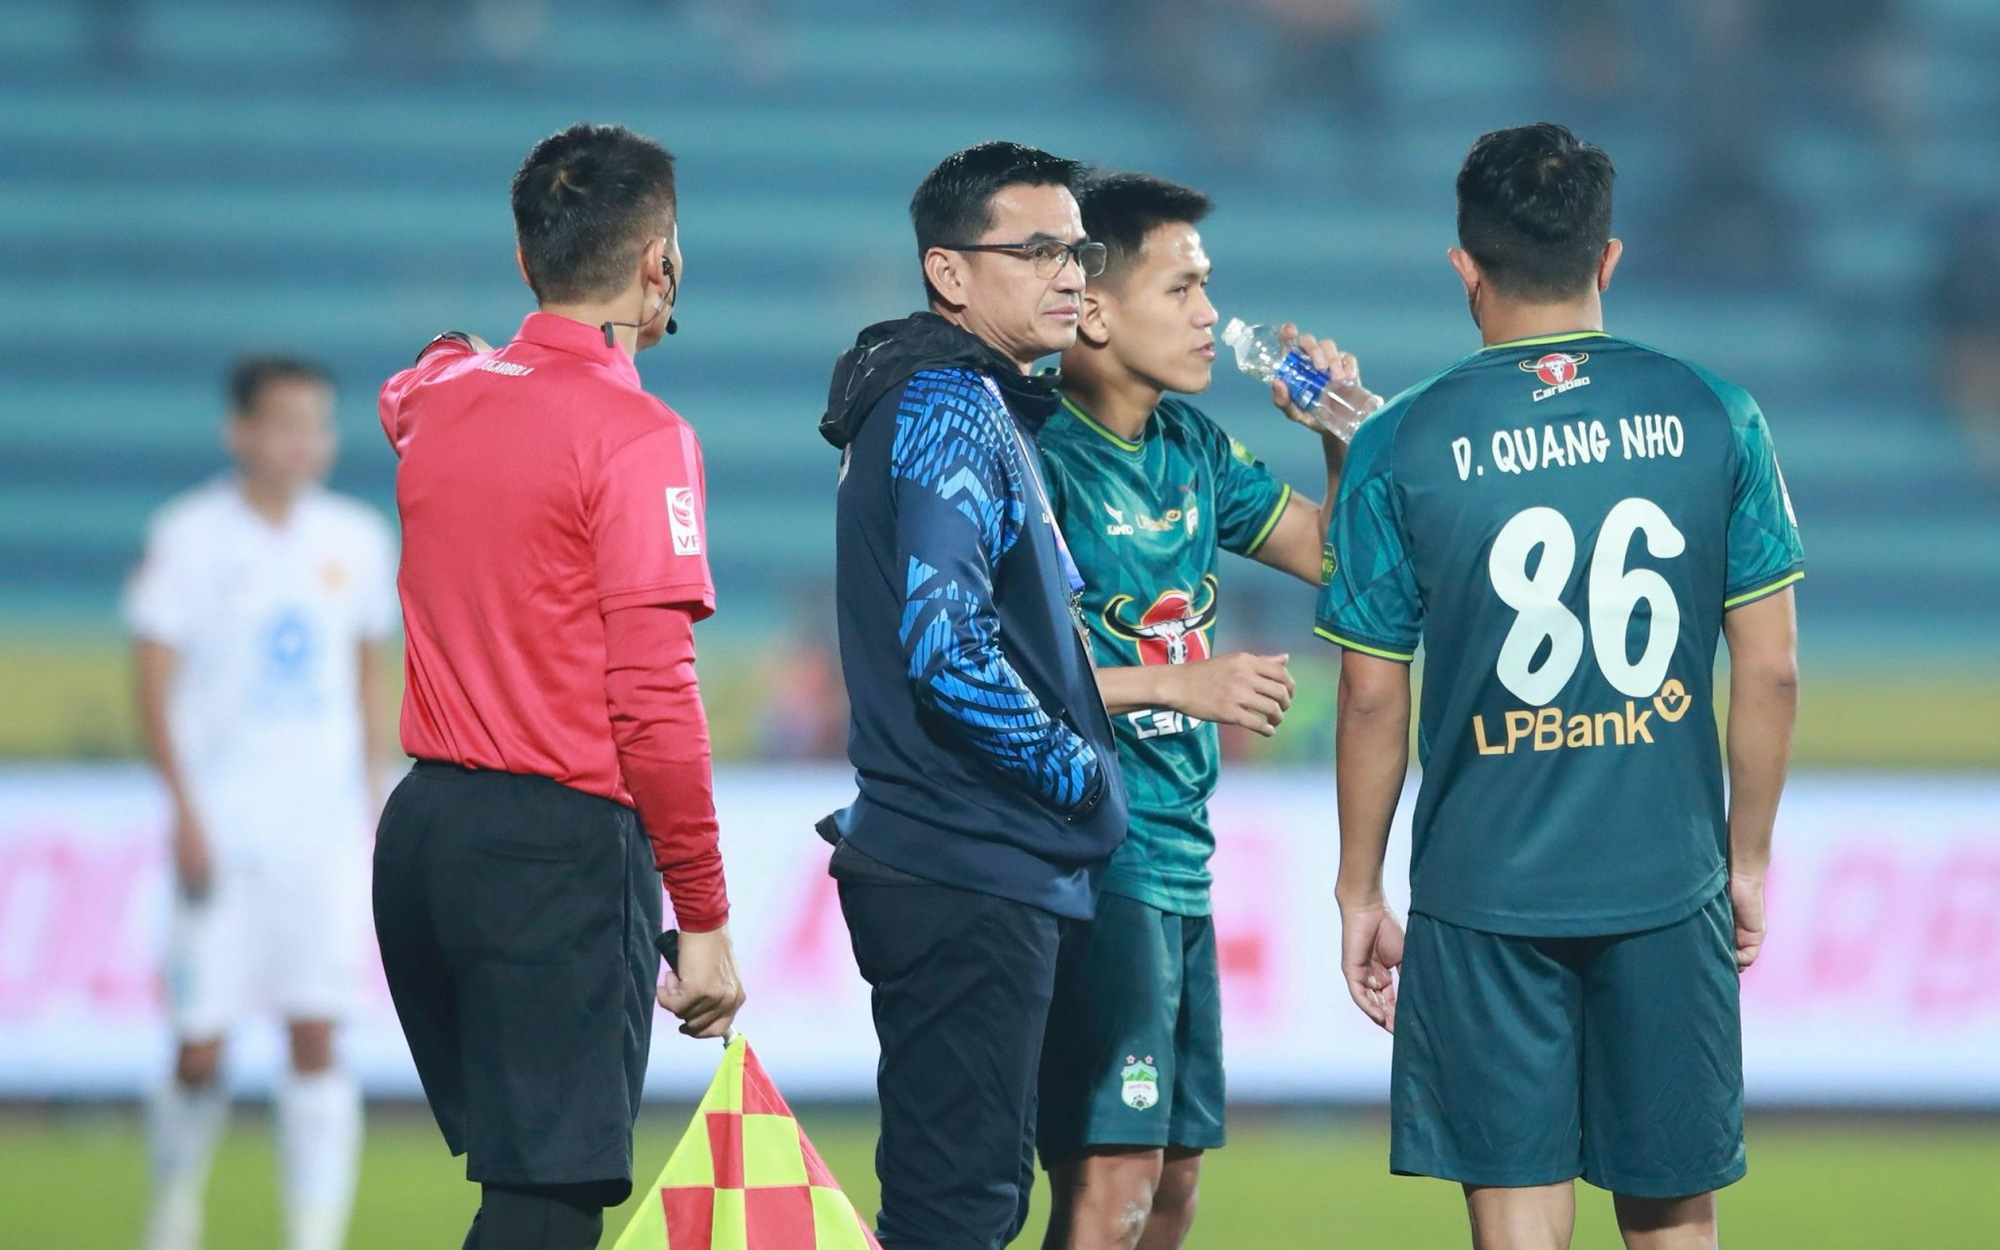 Rafaelson lập cú đúp, Thép Xanh Nam Định leo lên đứng đầu bảng xếp hạng V-League - Ảnh 11.